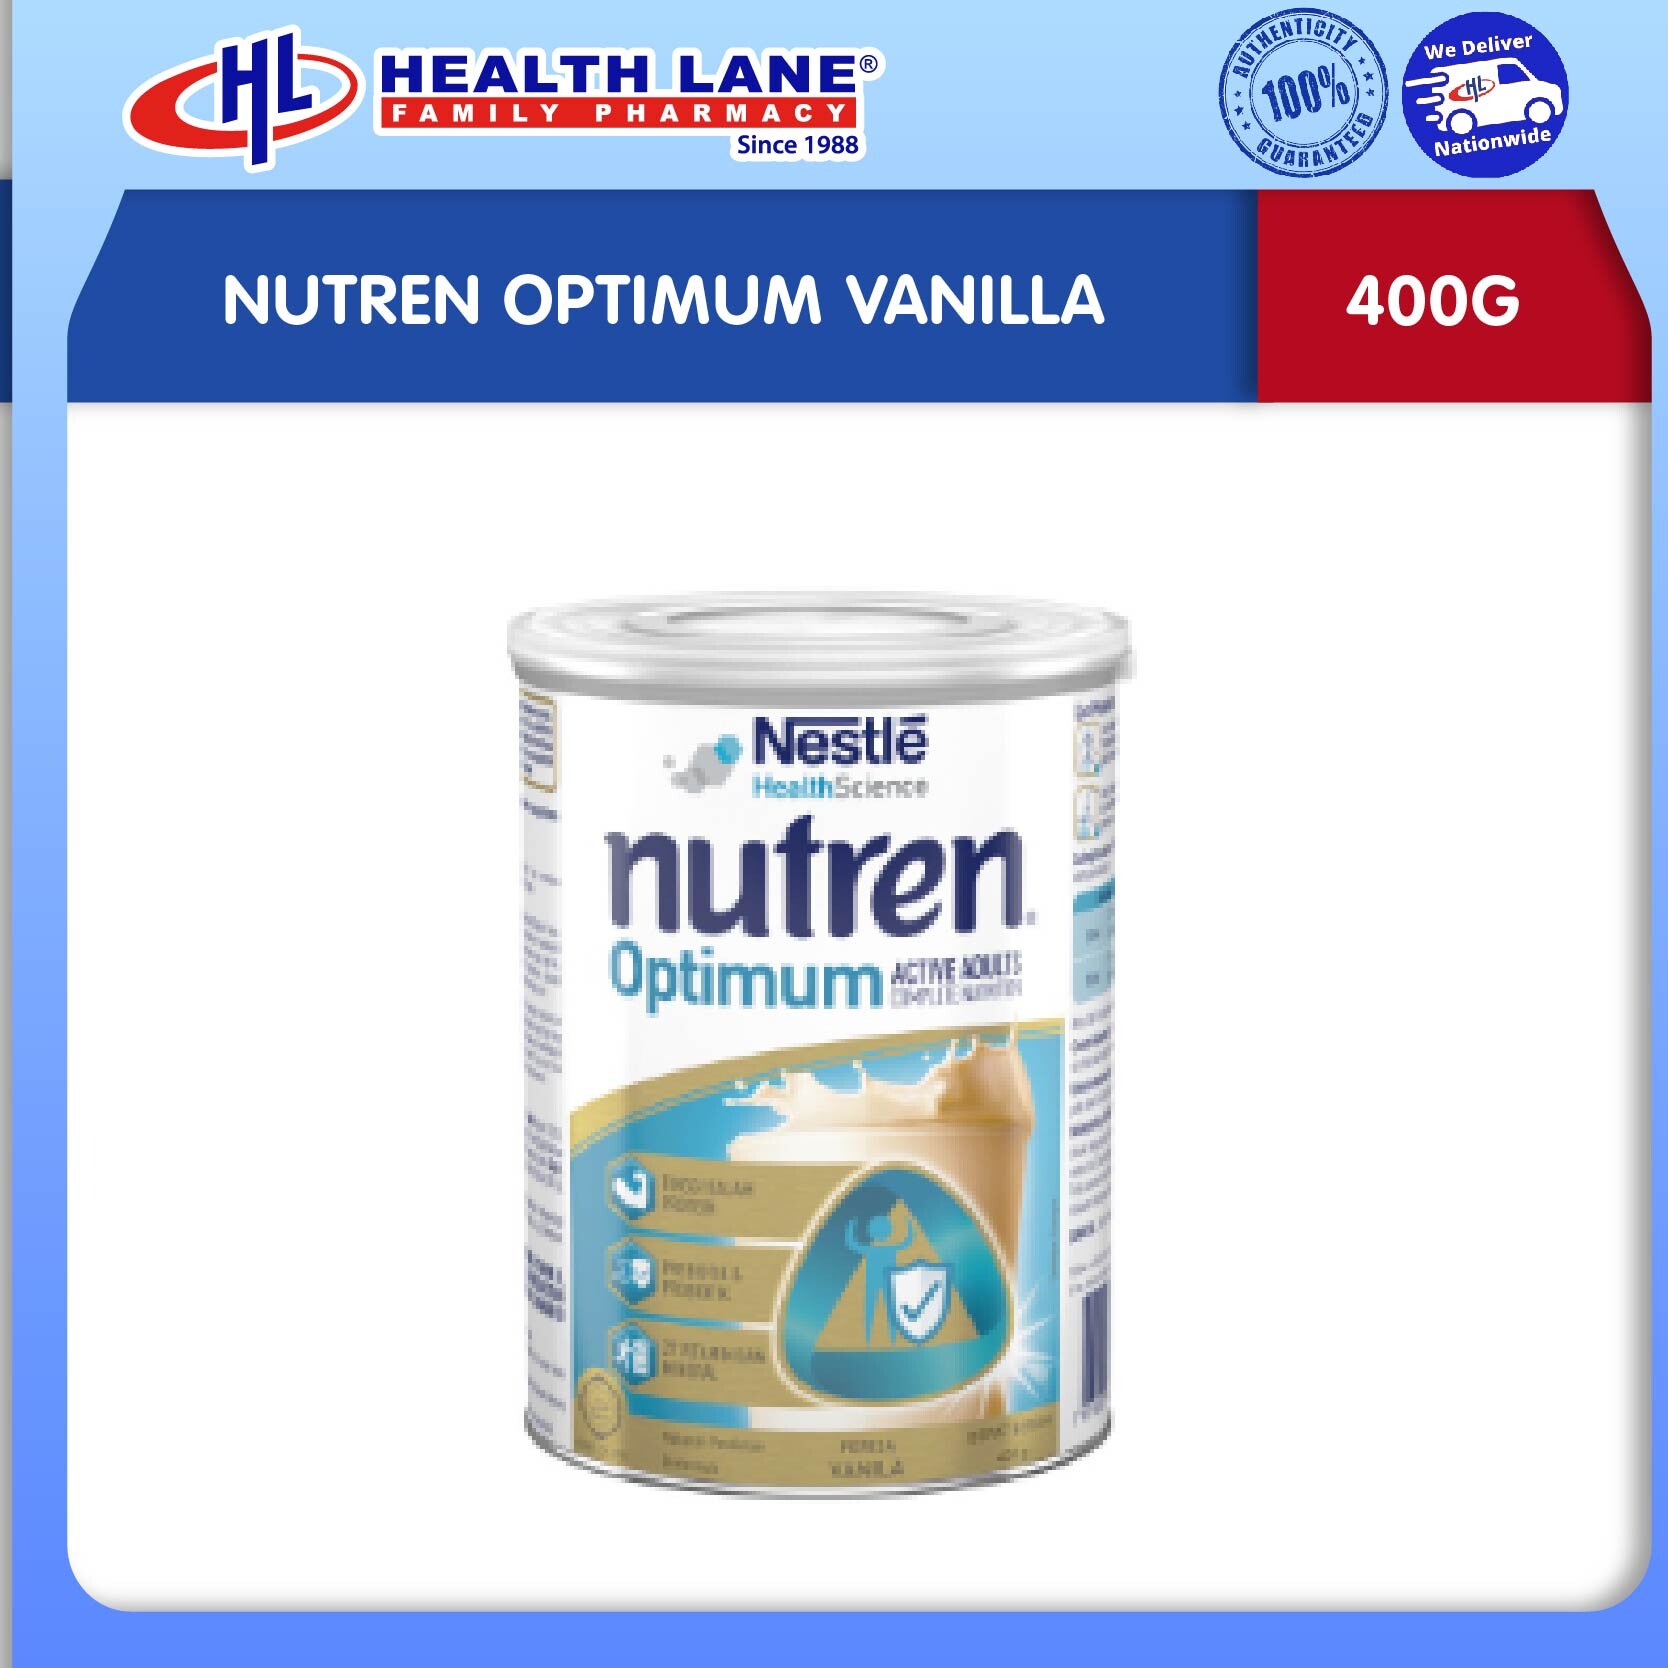 NUTREN OPTIMUM VANILLA (400G)